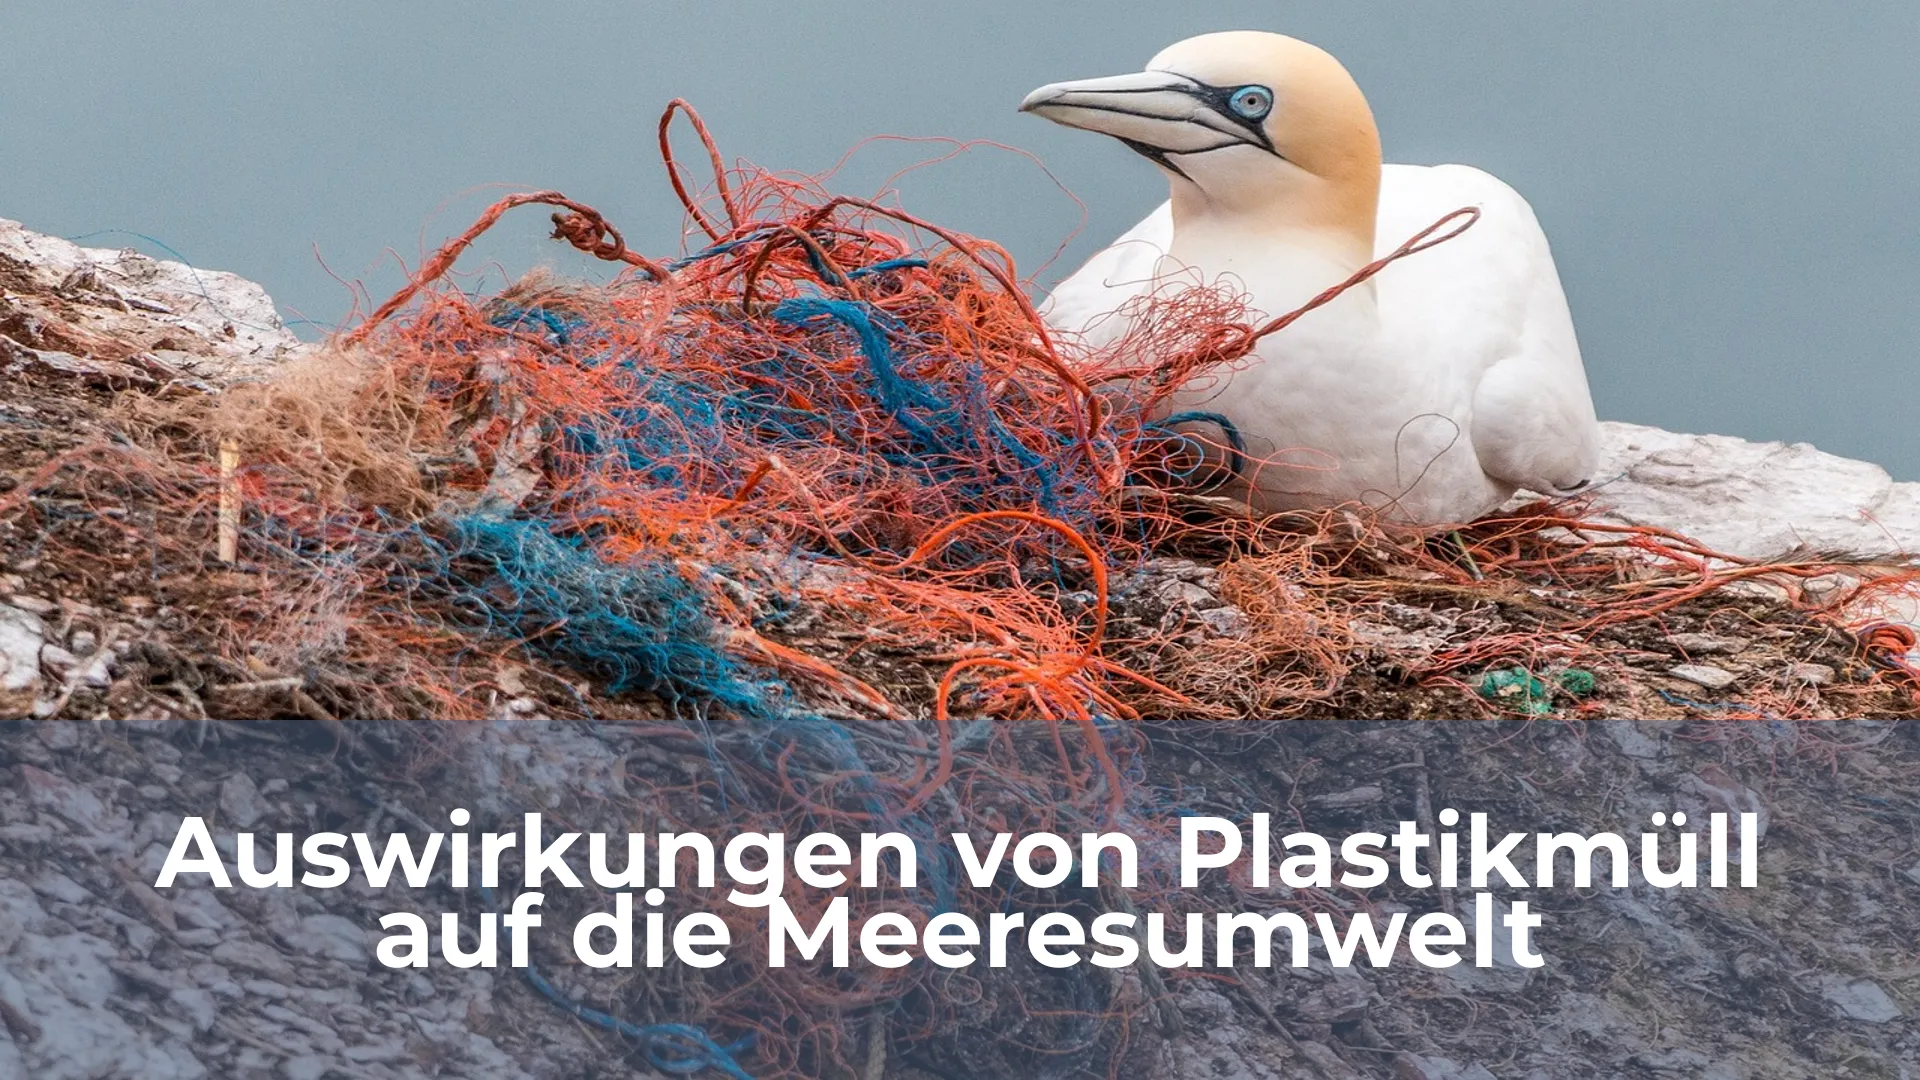 Auswirkungen von plastikmüll auf die meeresumwelt